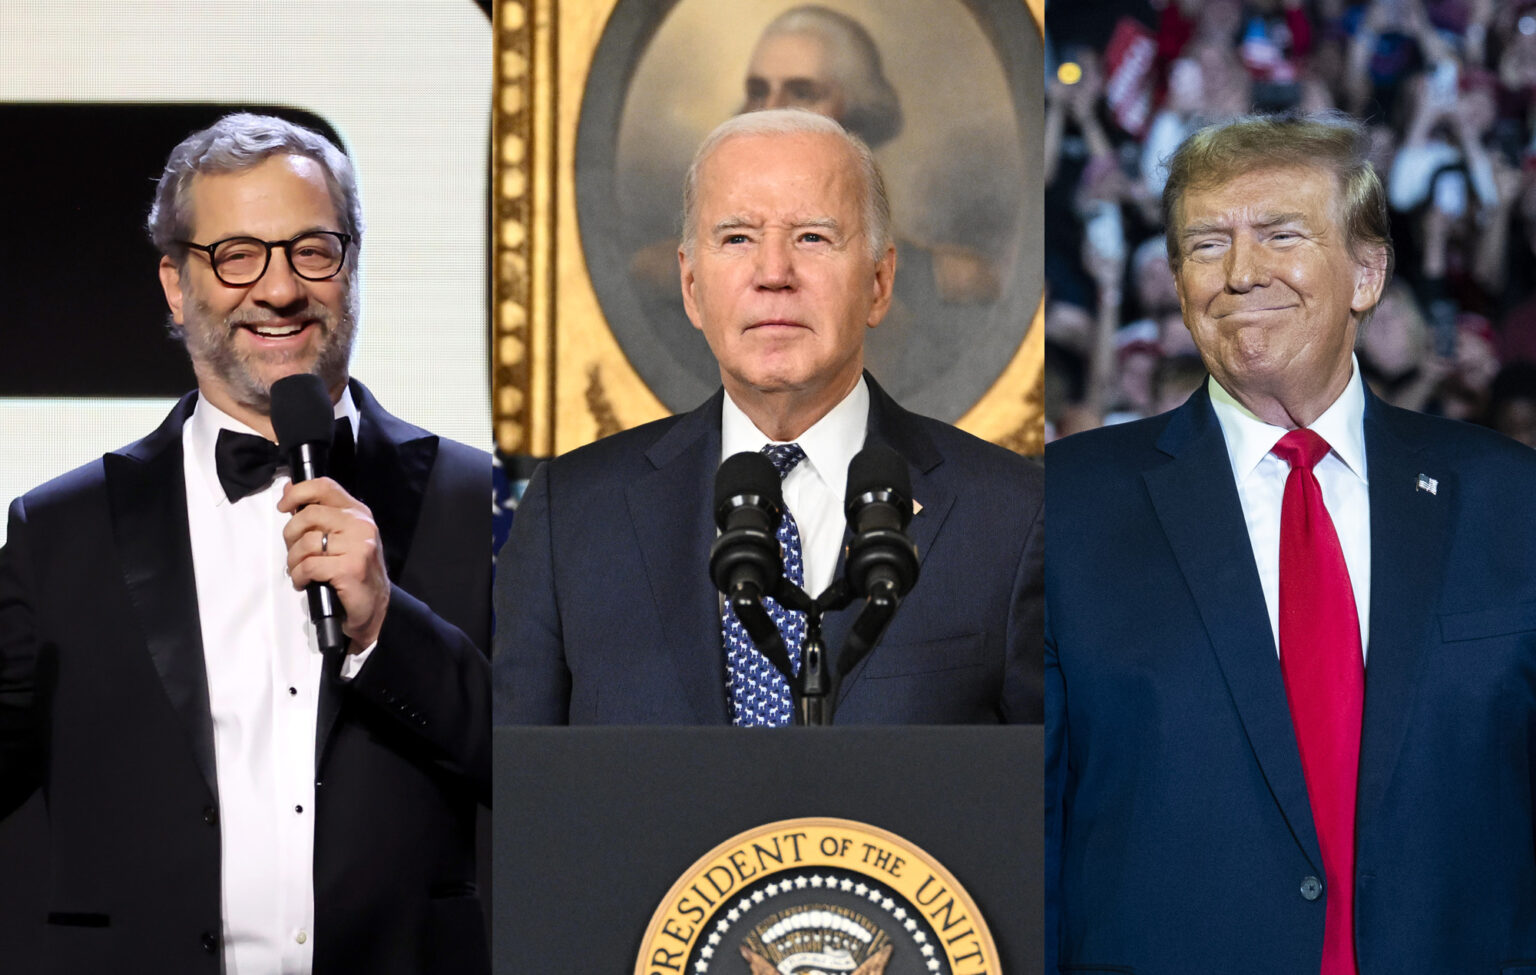 Judd Apatow critica Biden e Trump em discurso de premiação